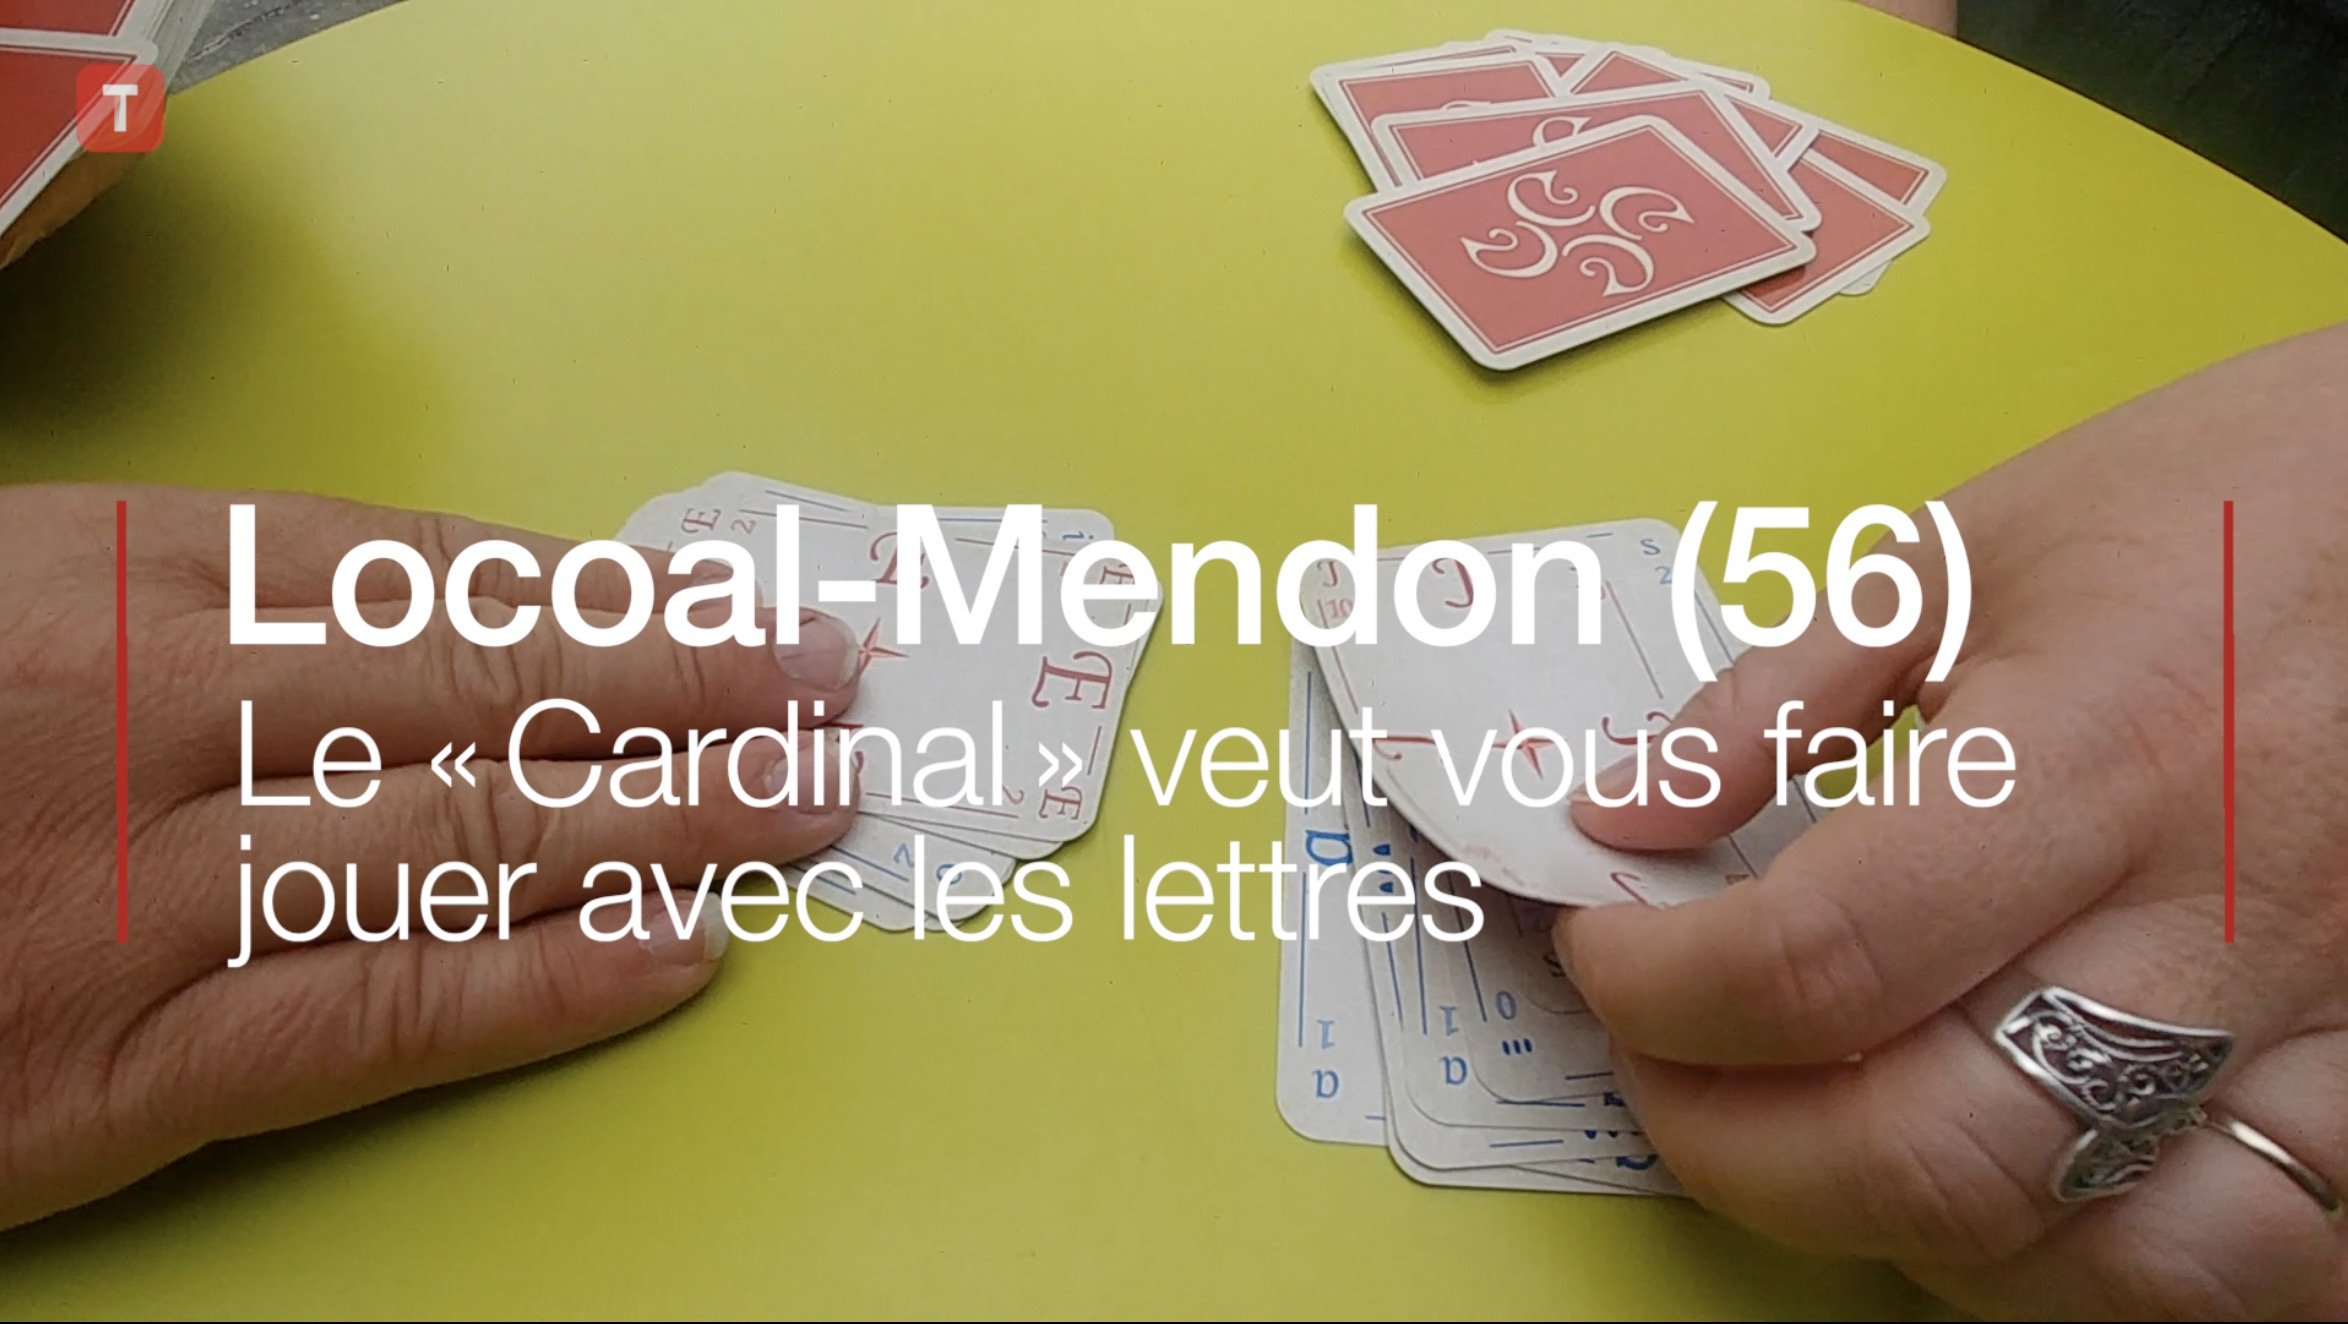 Locoal-Mendon (56). Le « Cardinal » veut vous faire jouer avec les lettres (Le Télégramme)